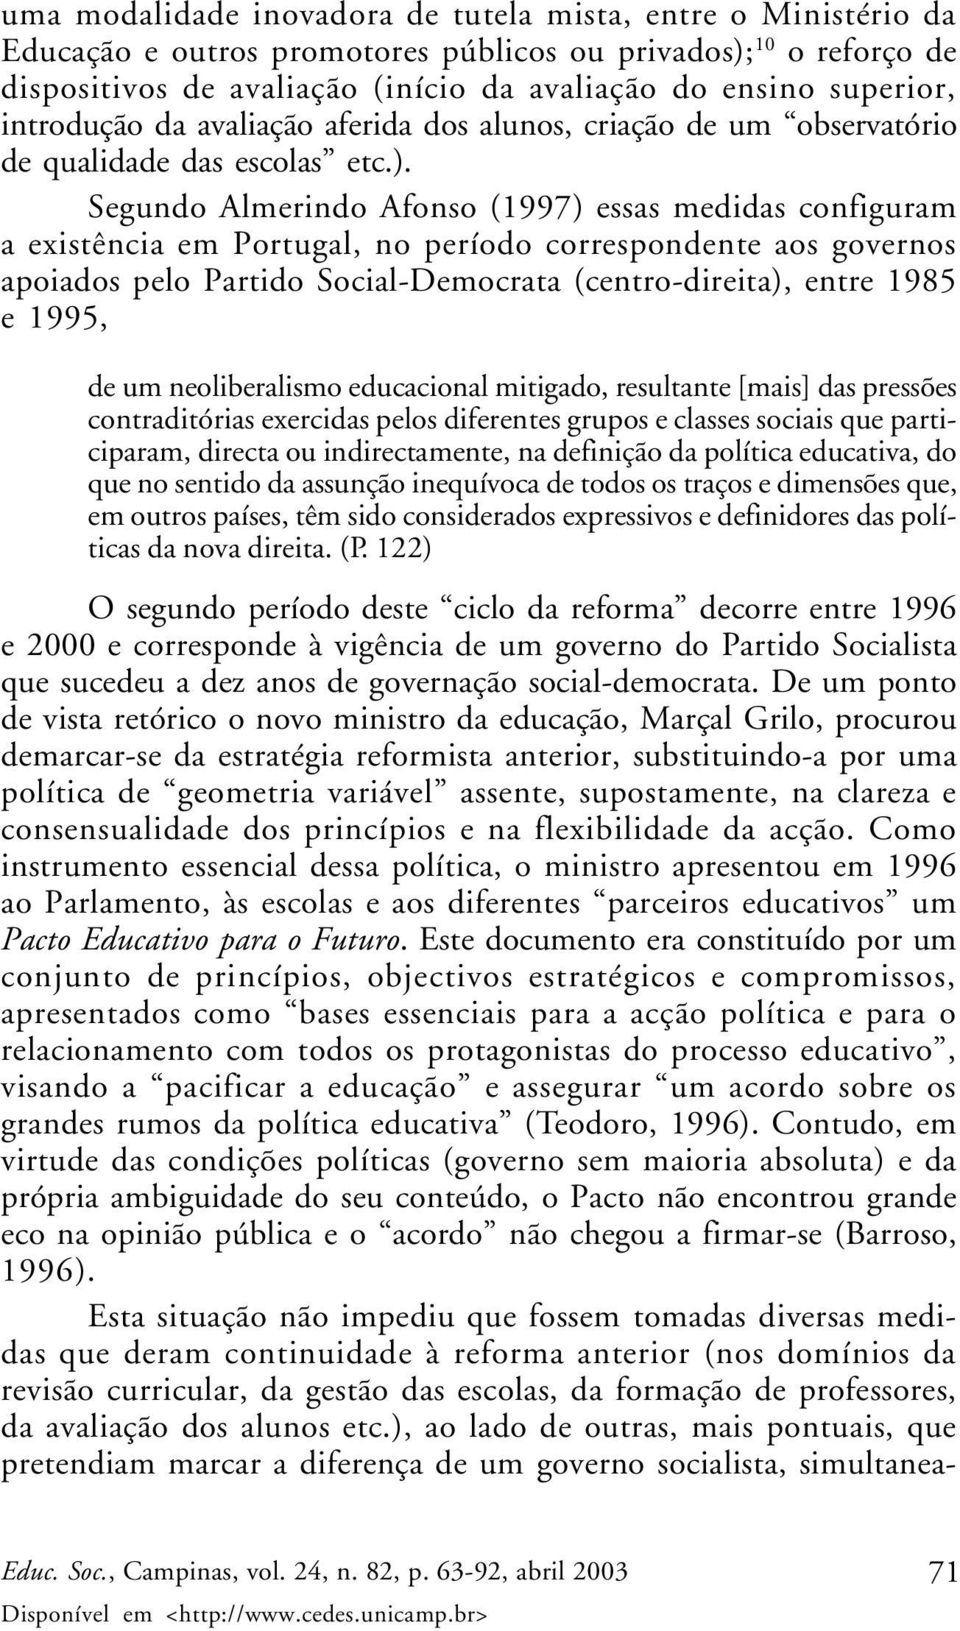 Segundo Almerindo Afonso (1997) essas medidas configuram a existência em Portugal, no período correspondente aos governos apoiados pelo Partido Social-Democrata (centro-direita), entre 1985 e 1995,